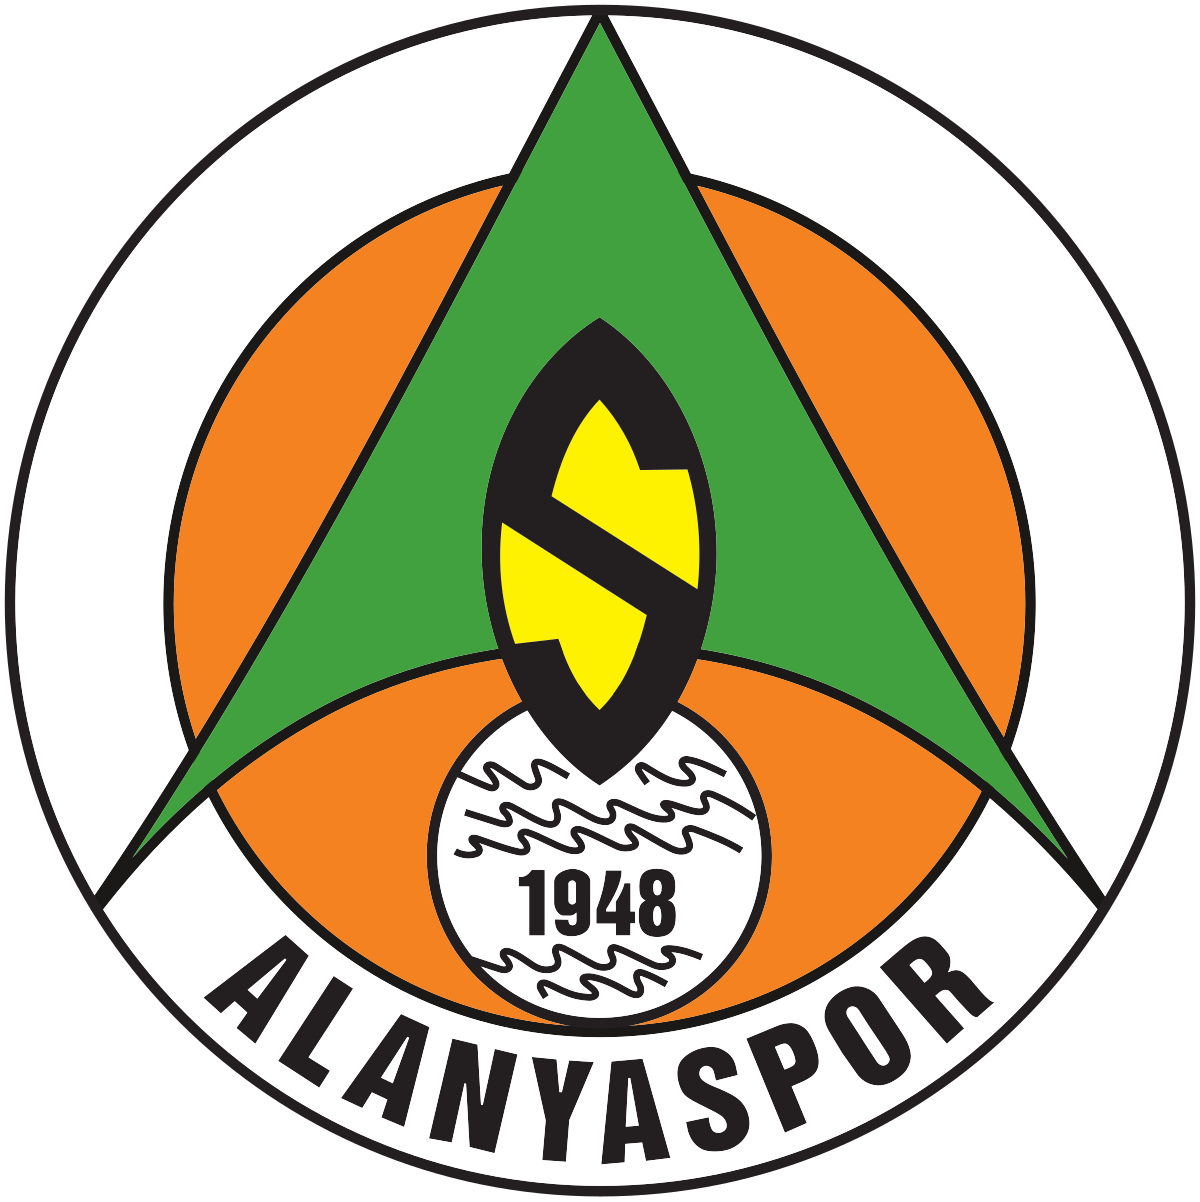 Alanyaspor - Wikipedia